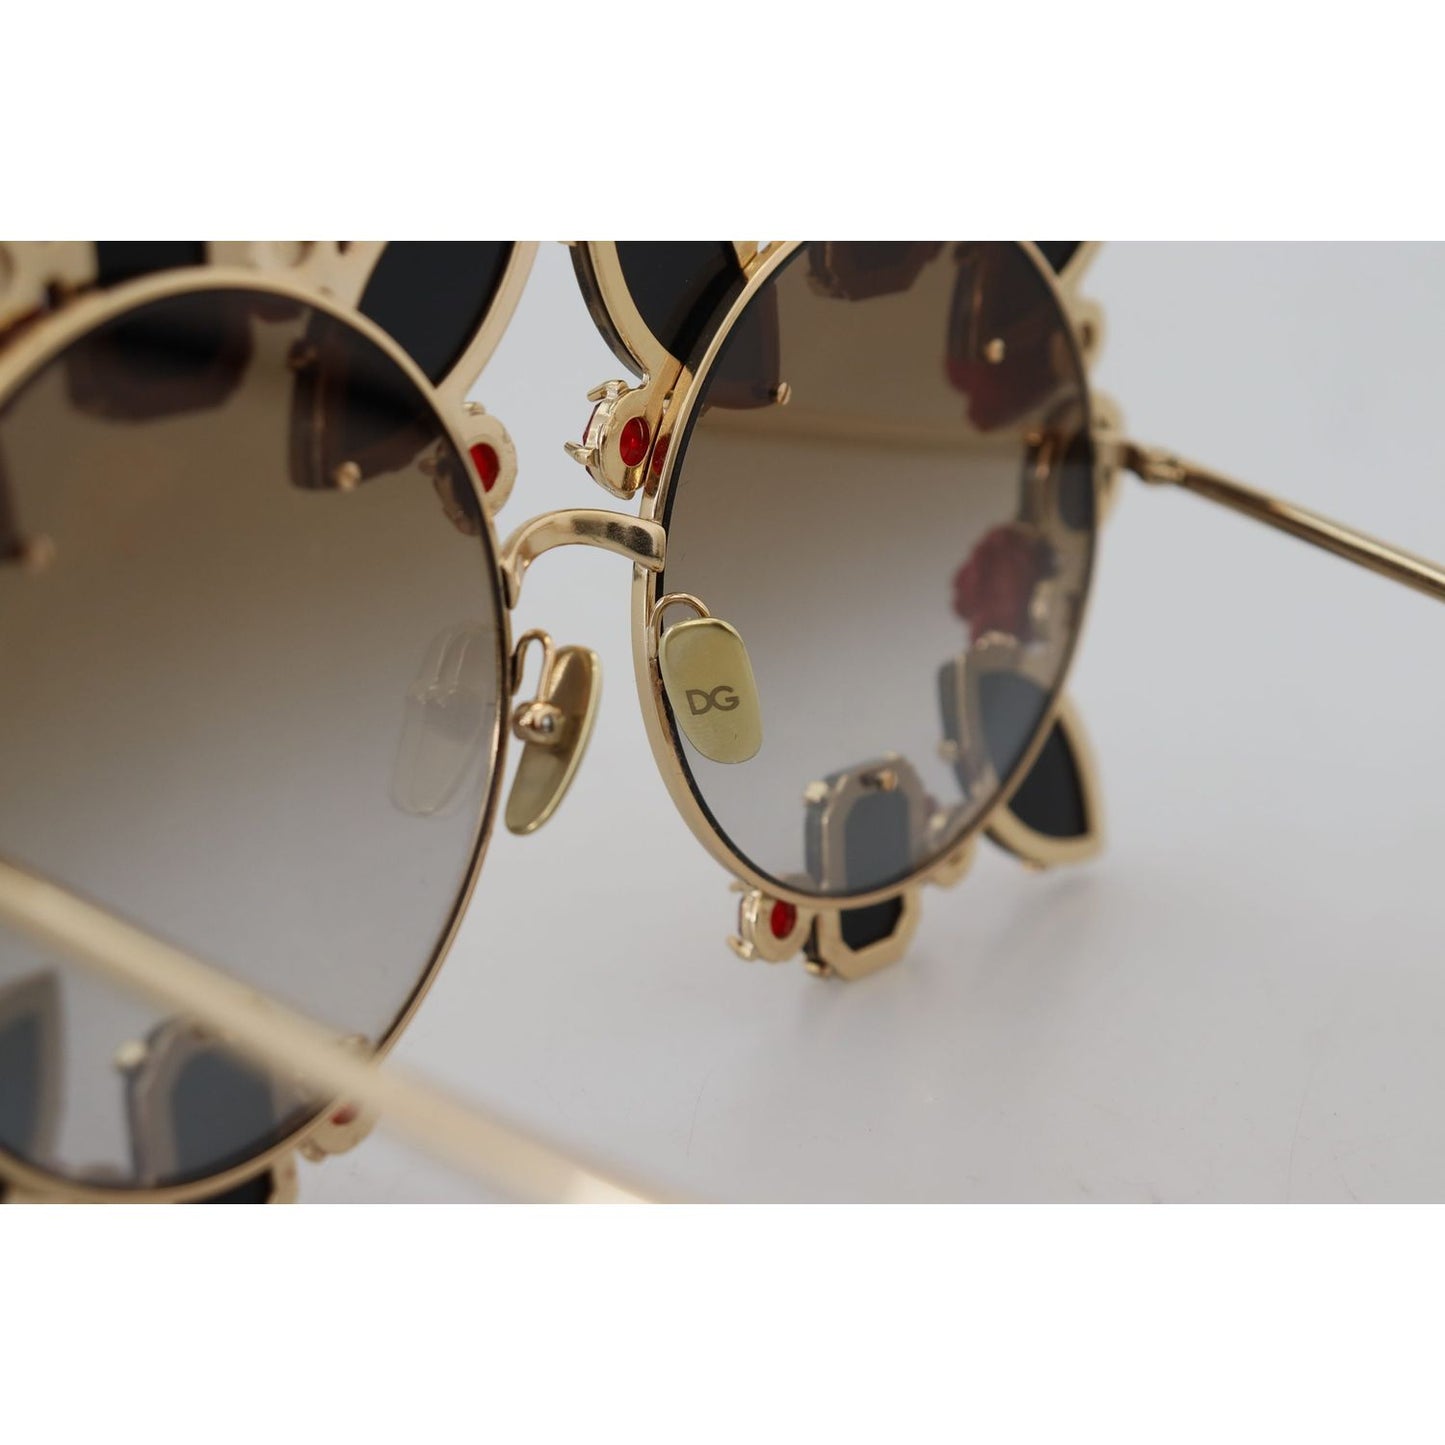 Dolce & Gabbana Elegant Round Rose-Embellished Sunglasses gold-metal-frame-roses-embellished-dg2207b-sunglasses